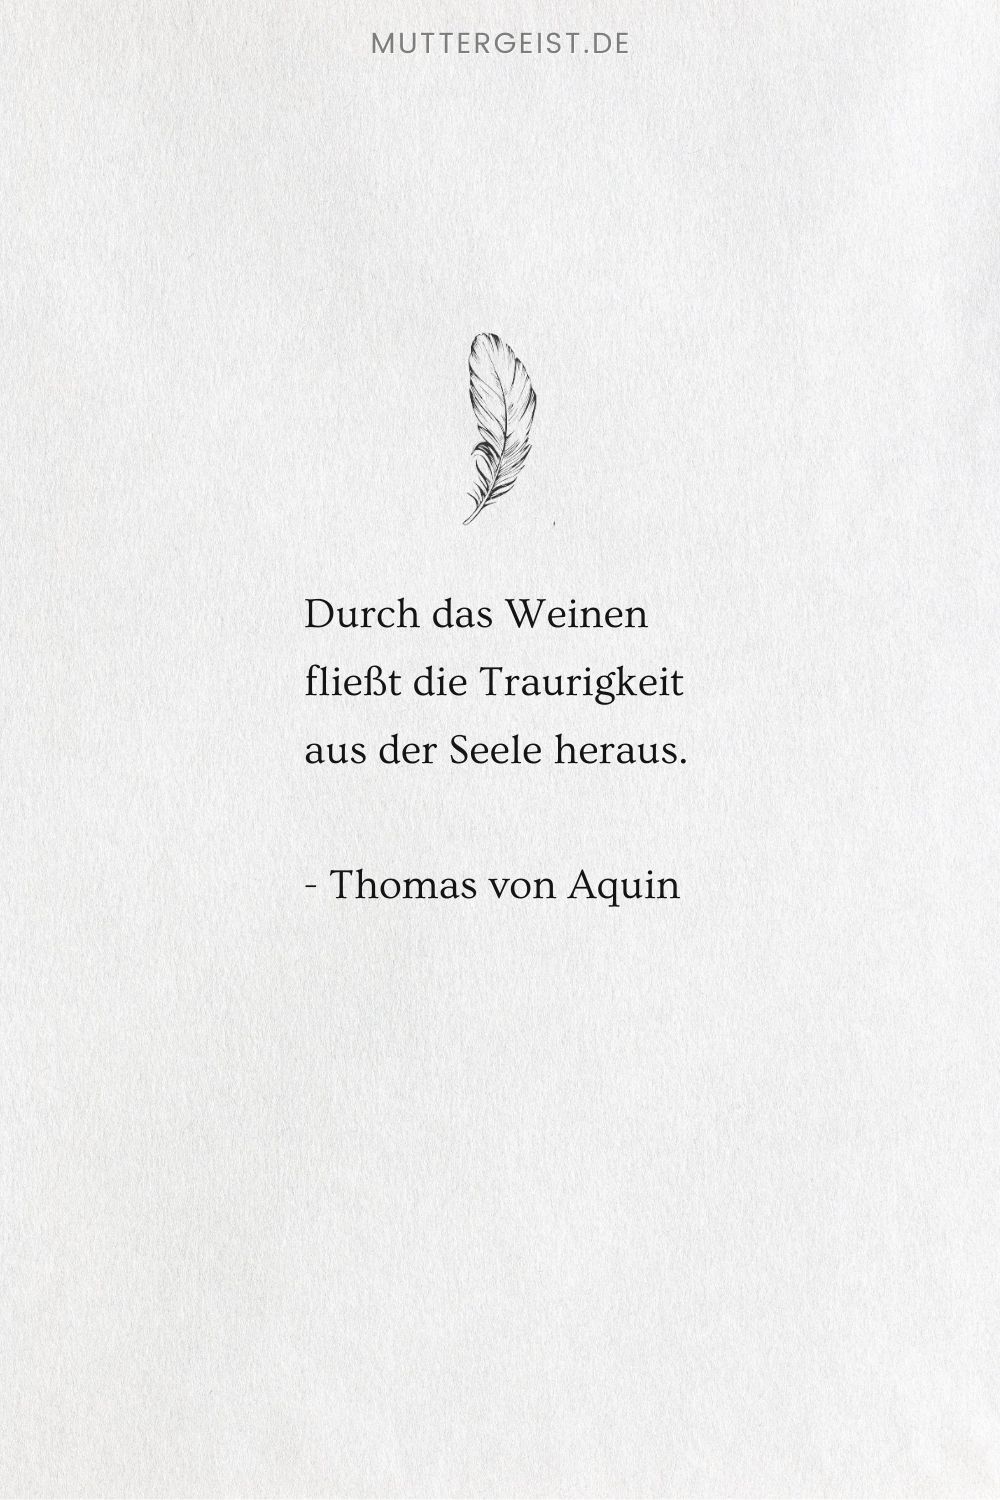 Die Weisheit des Thomas von Aquin über die Traurigkeit, die der Seele entströmt